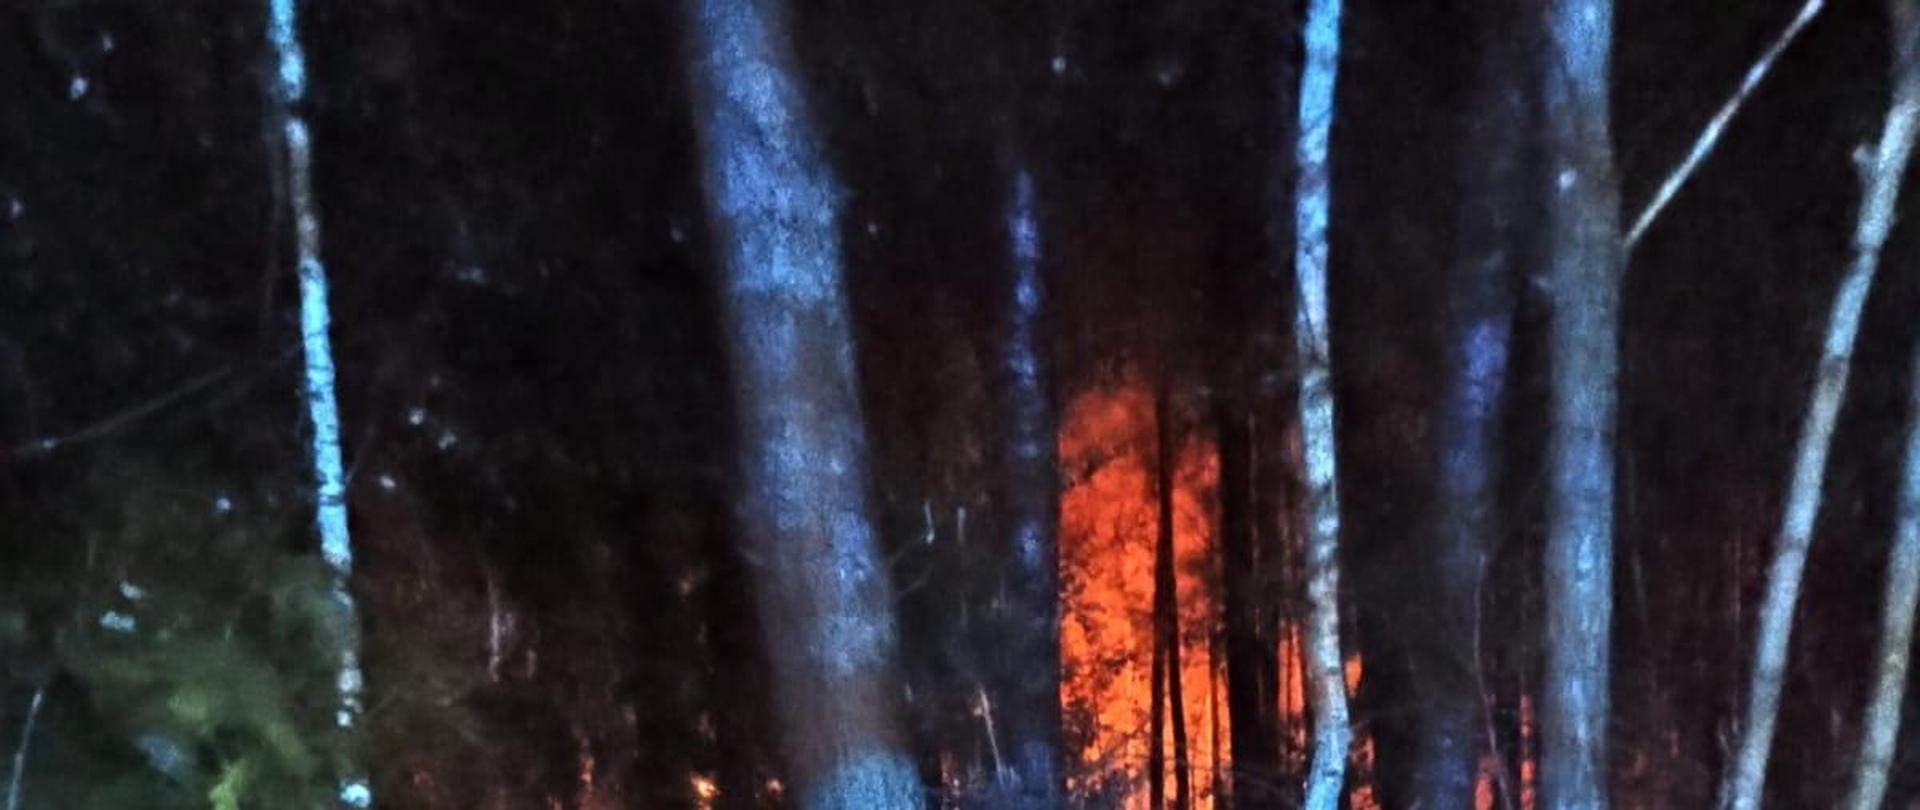 Na zdjęciu na pierwszym planie widoczne są drzewa, w oddali widoczny jest pożar poszycia leśnego.